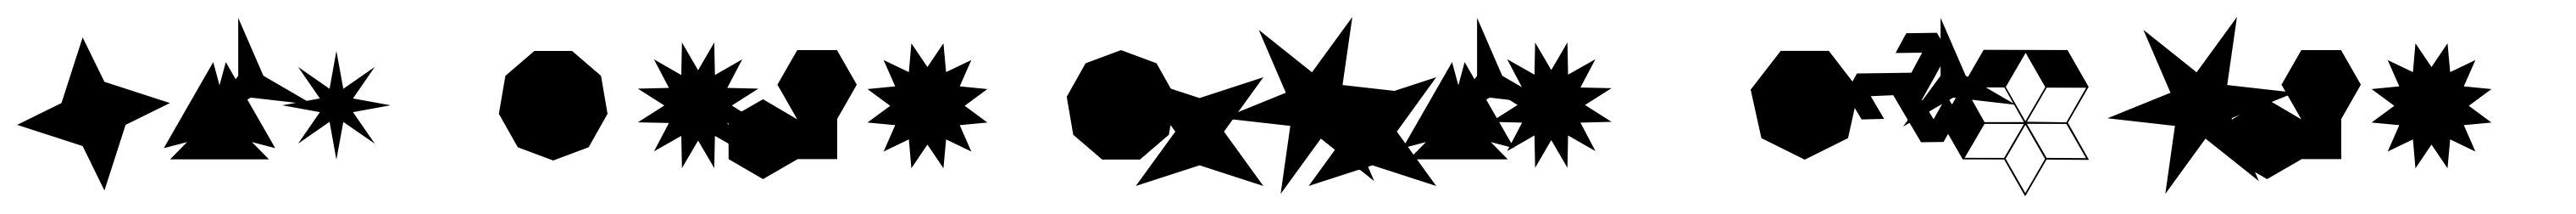 Ingy Star Tilings Regular